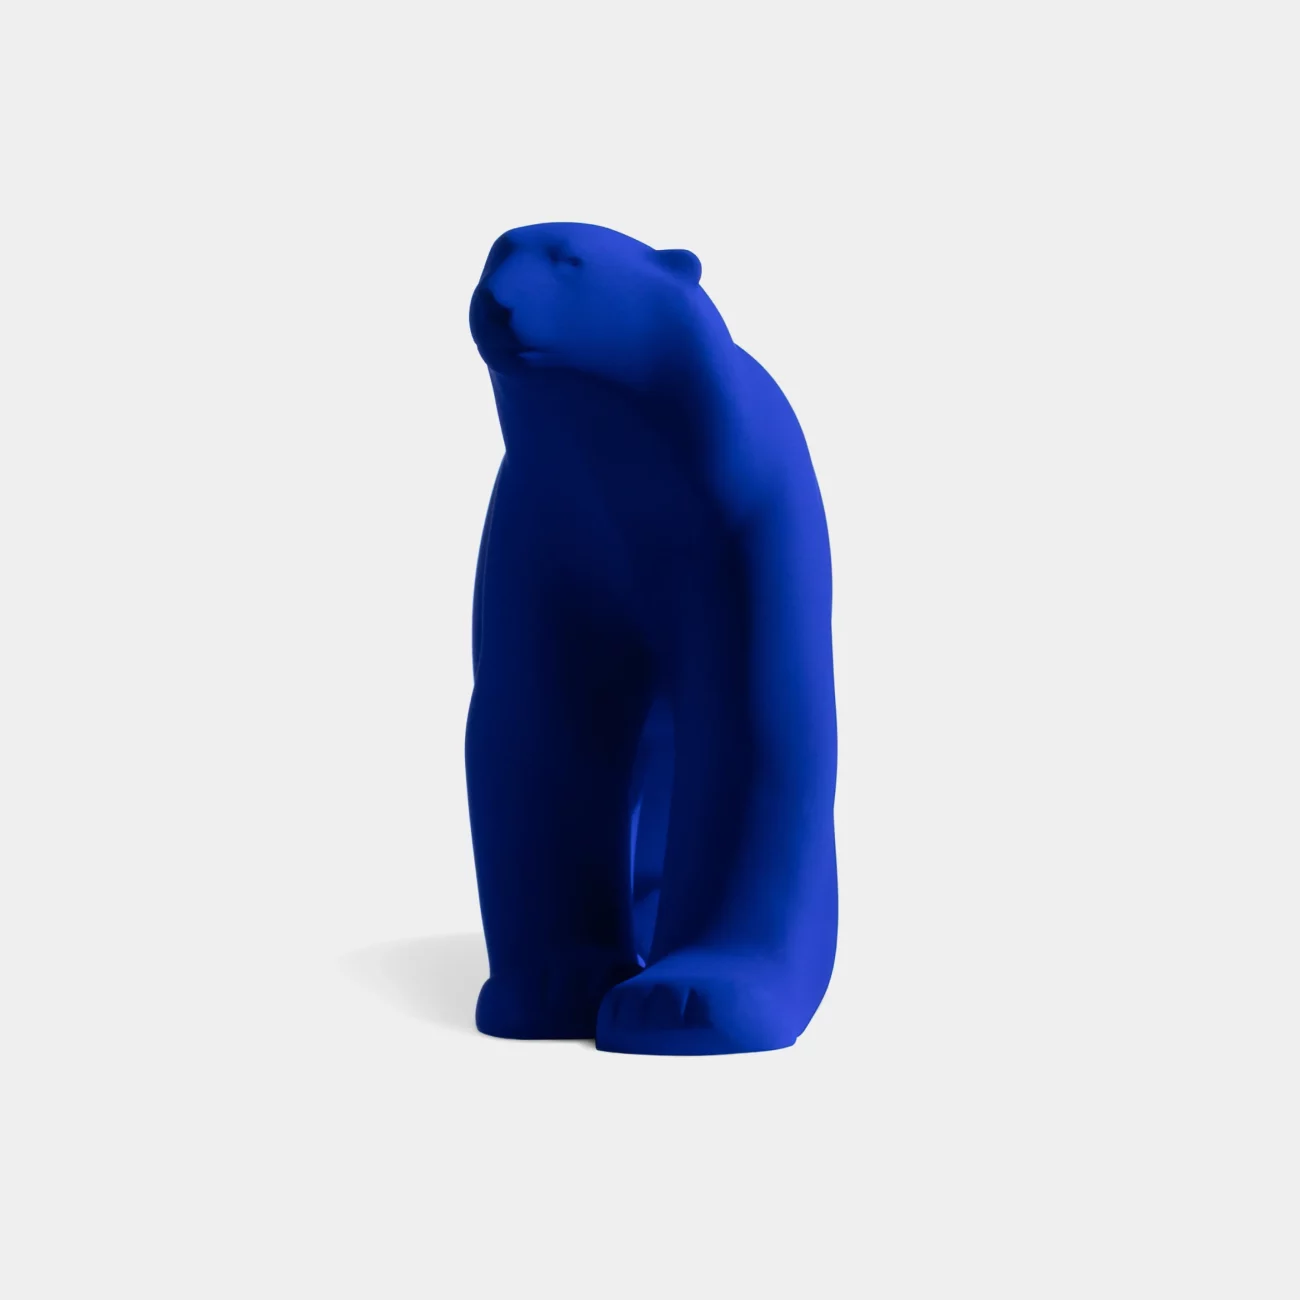 L'ours Pompon édition Yves Klein vue de face